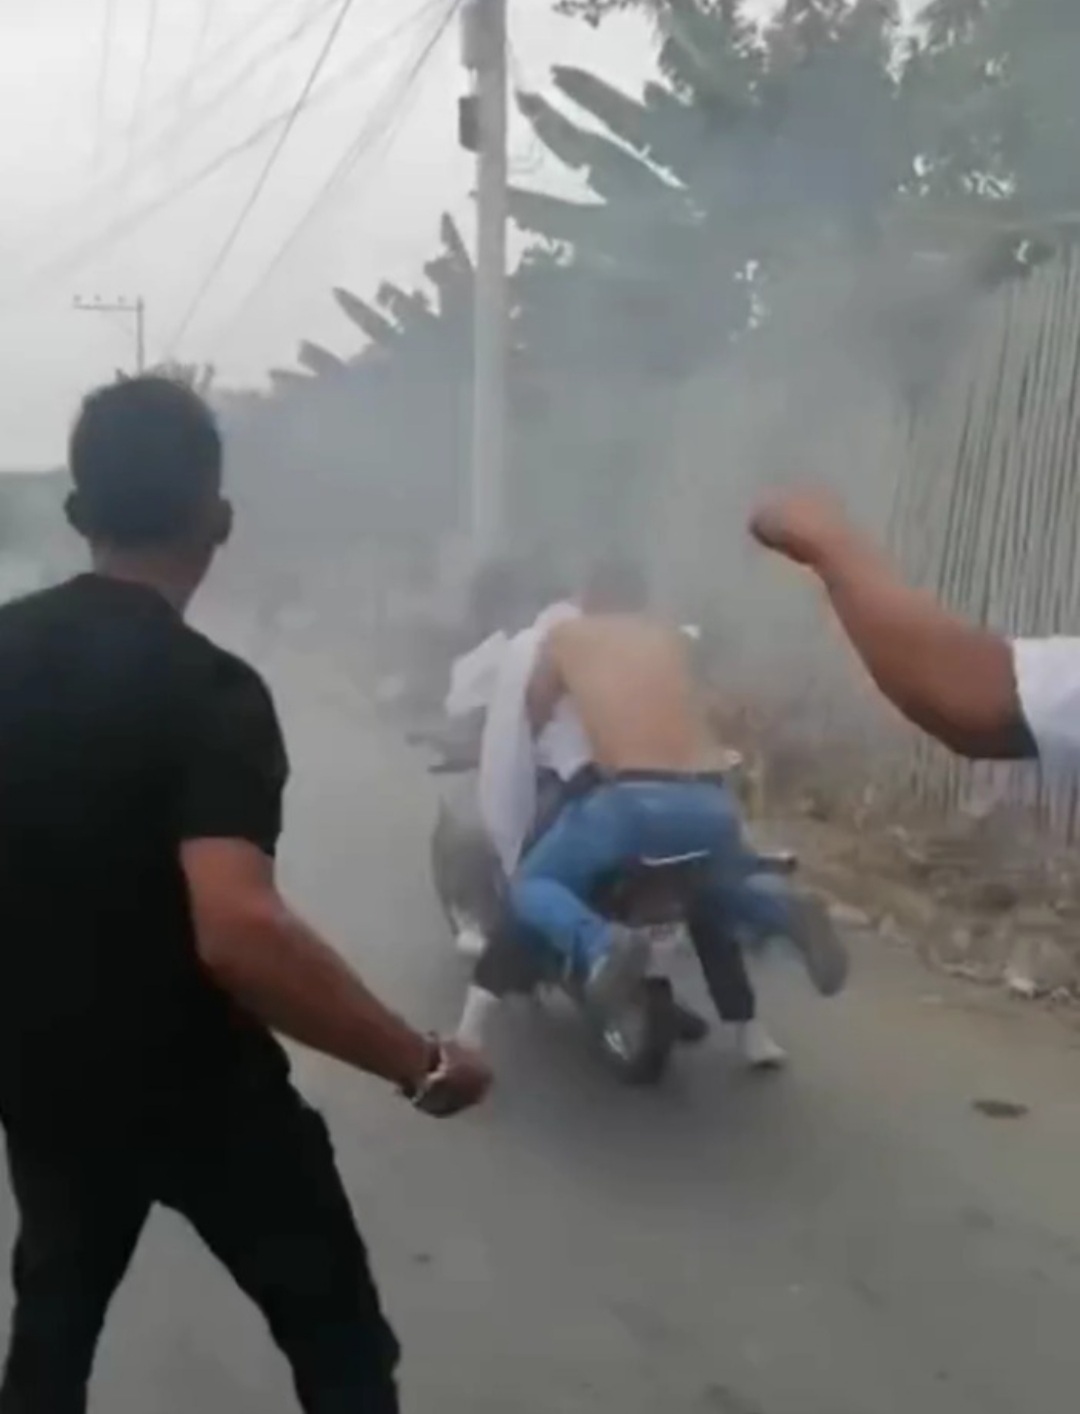 Impactante: sacaron del ataúd a su amigo para llevarlo a dar una “última vuelta” en moto